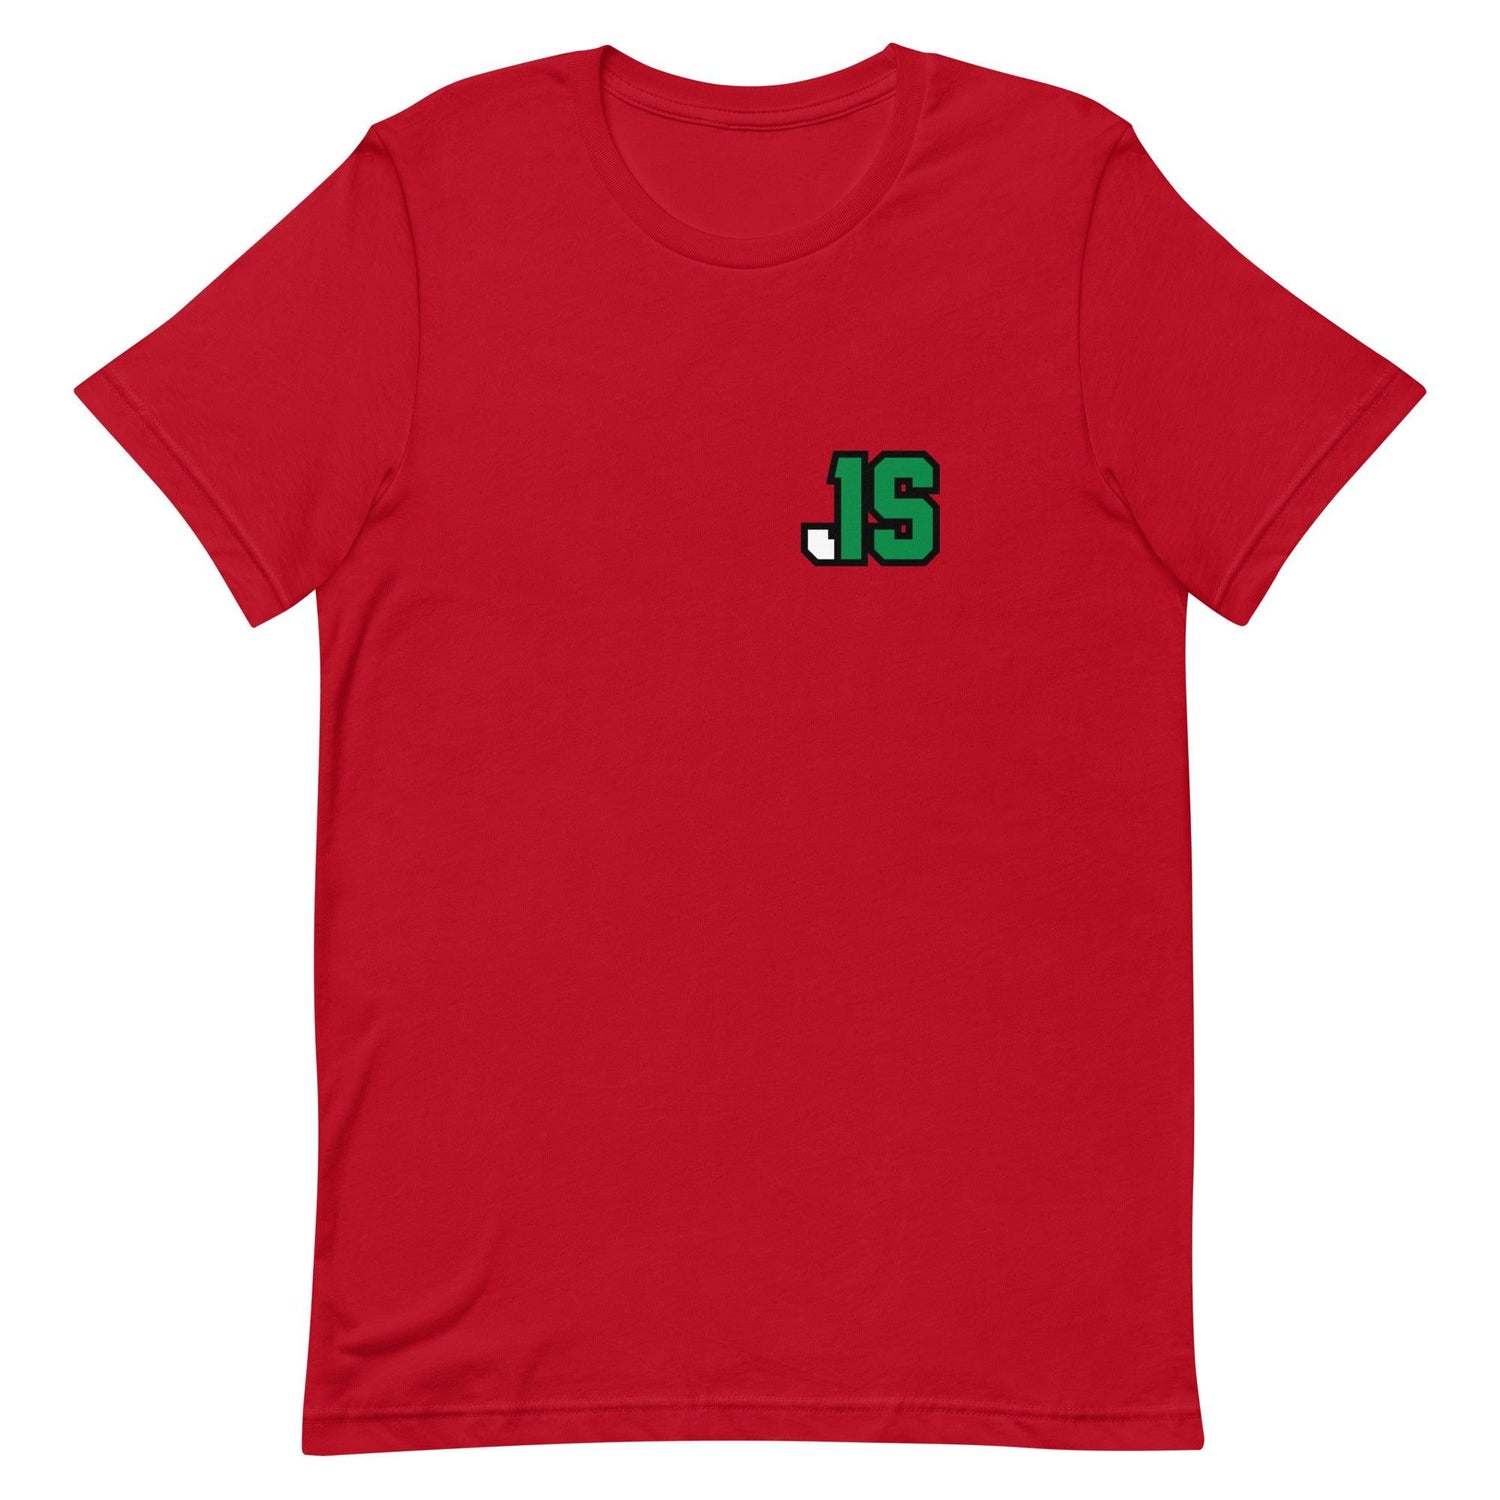 Jyaire Shorter "JS1" t-shirt - Fan Arch